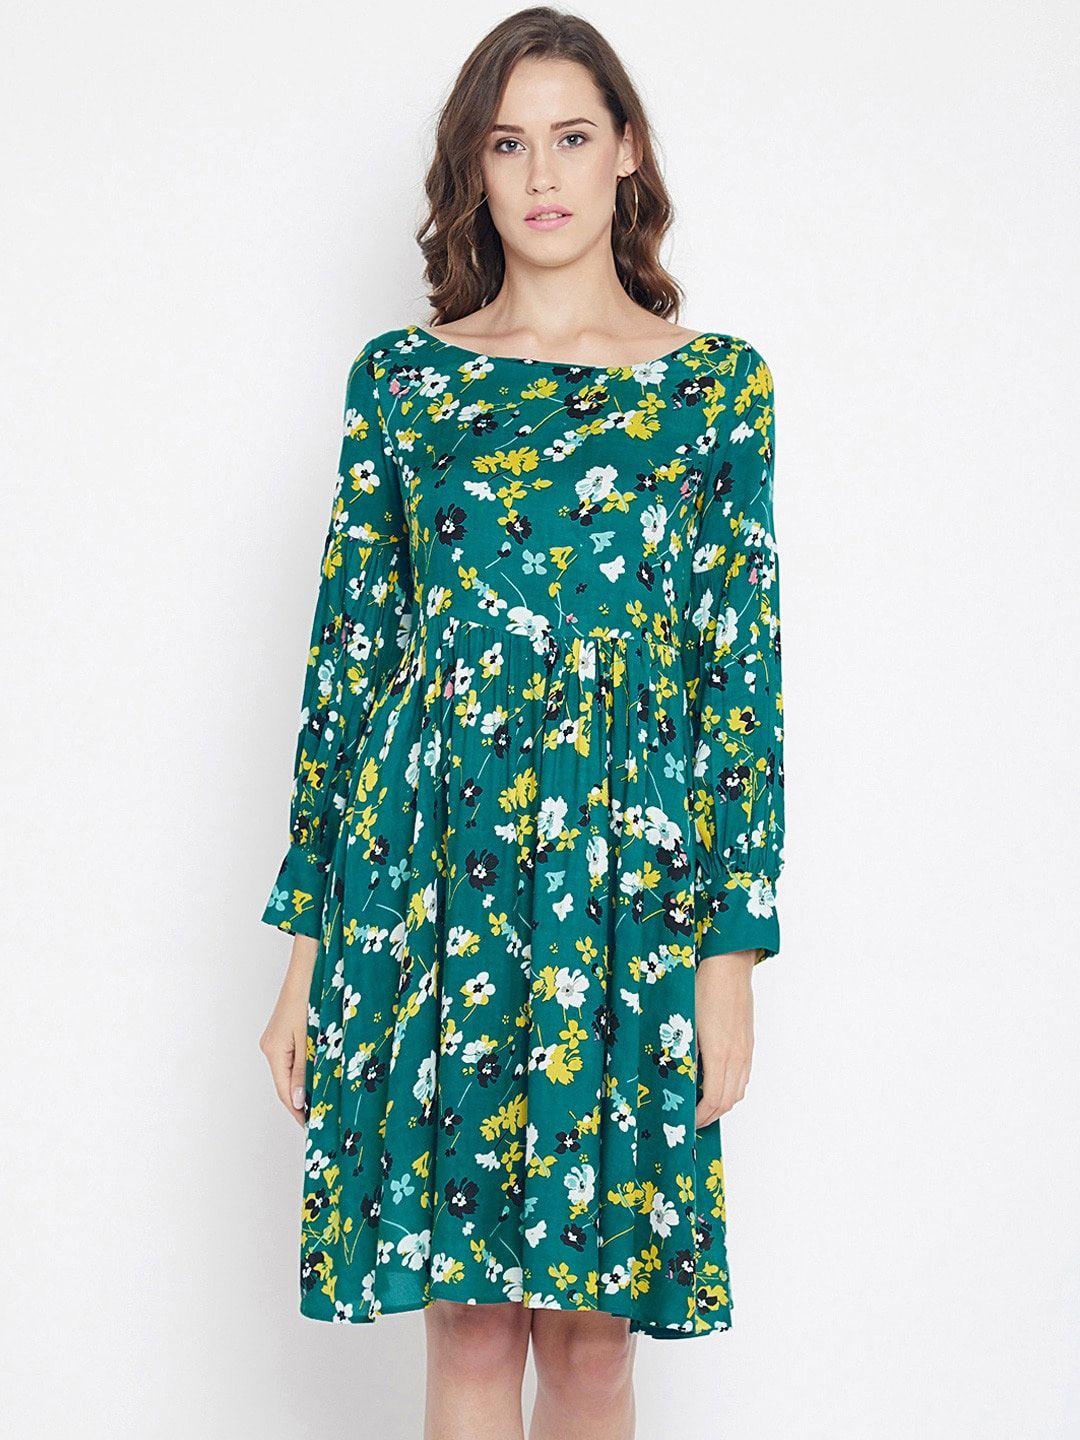 panit green floral crepe dress